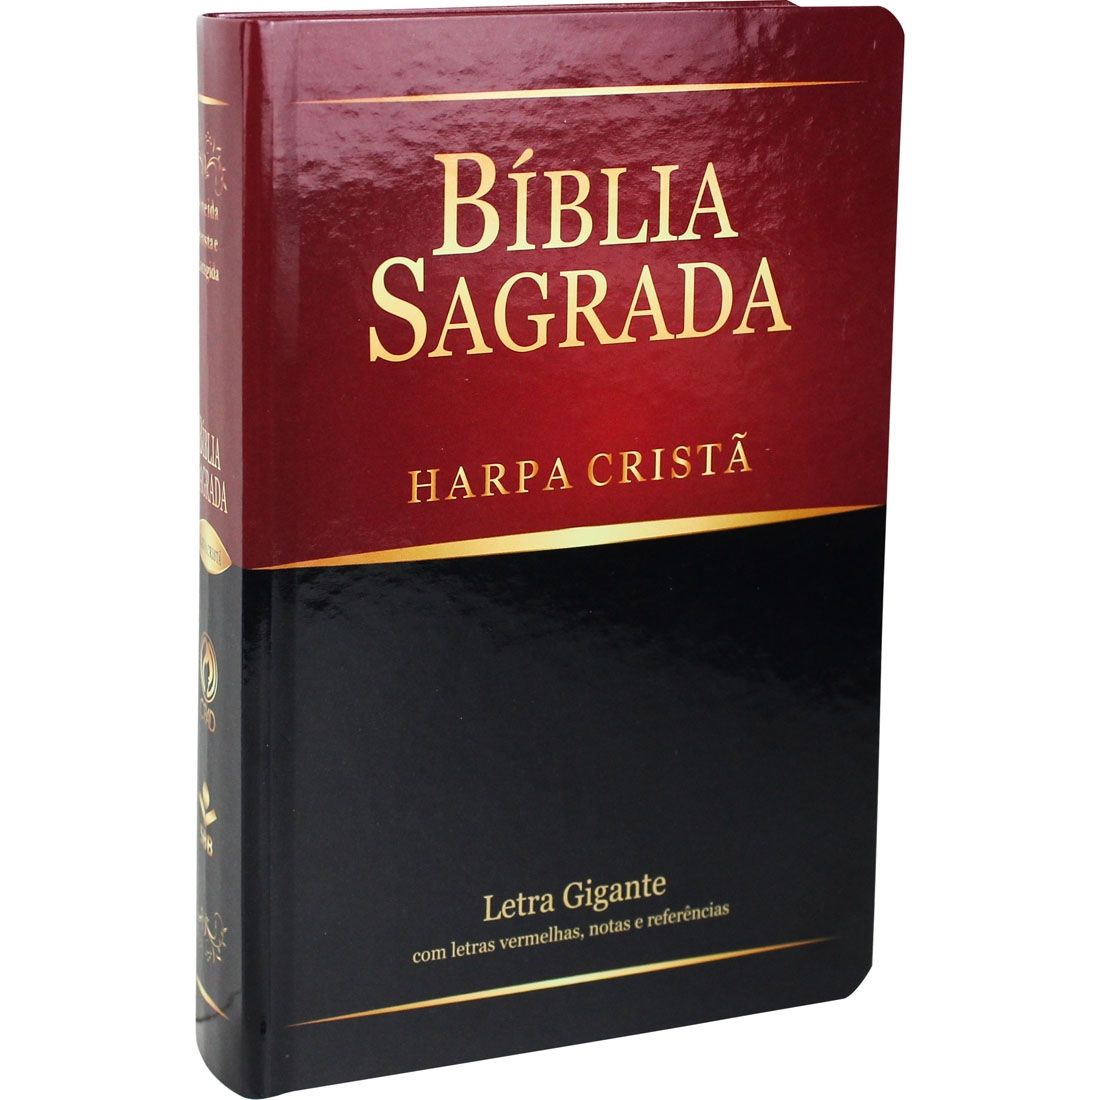 Bíblia Sagrada Letra Gigante com Harpa Cristã Semiflex Preto e Bordô